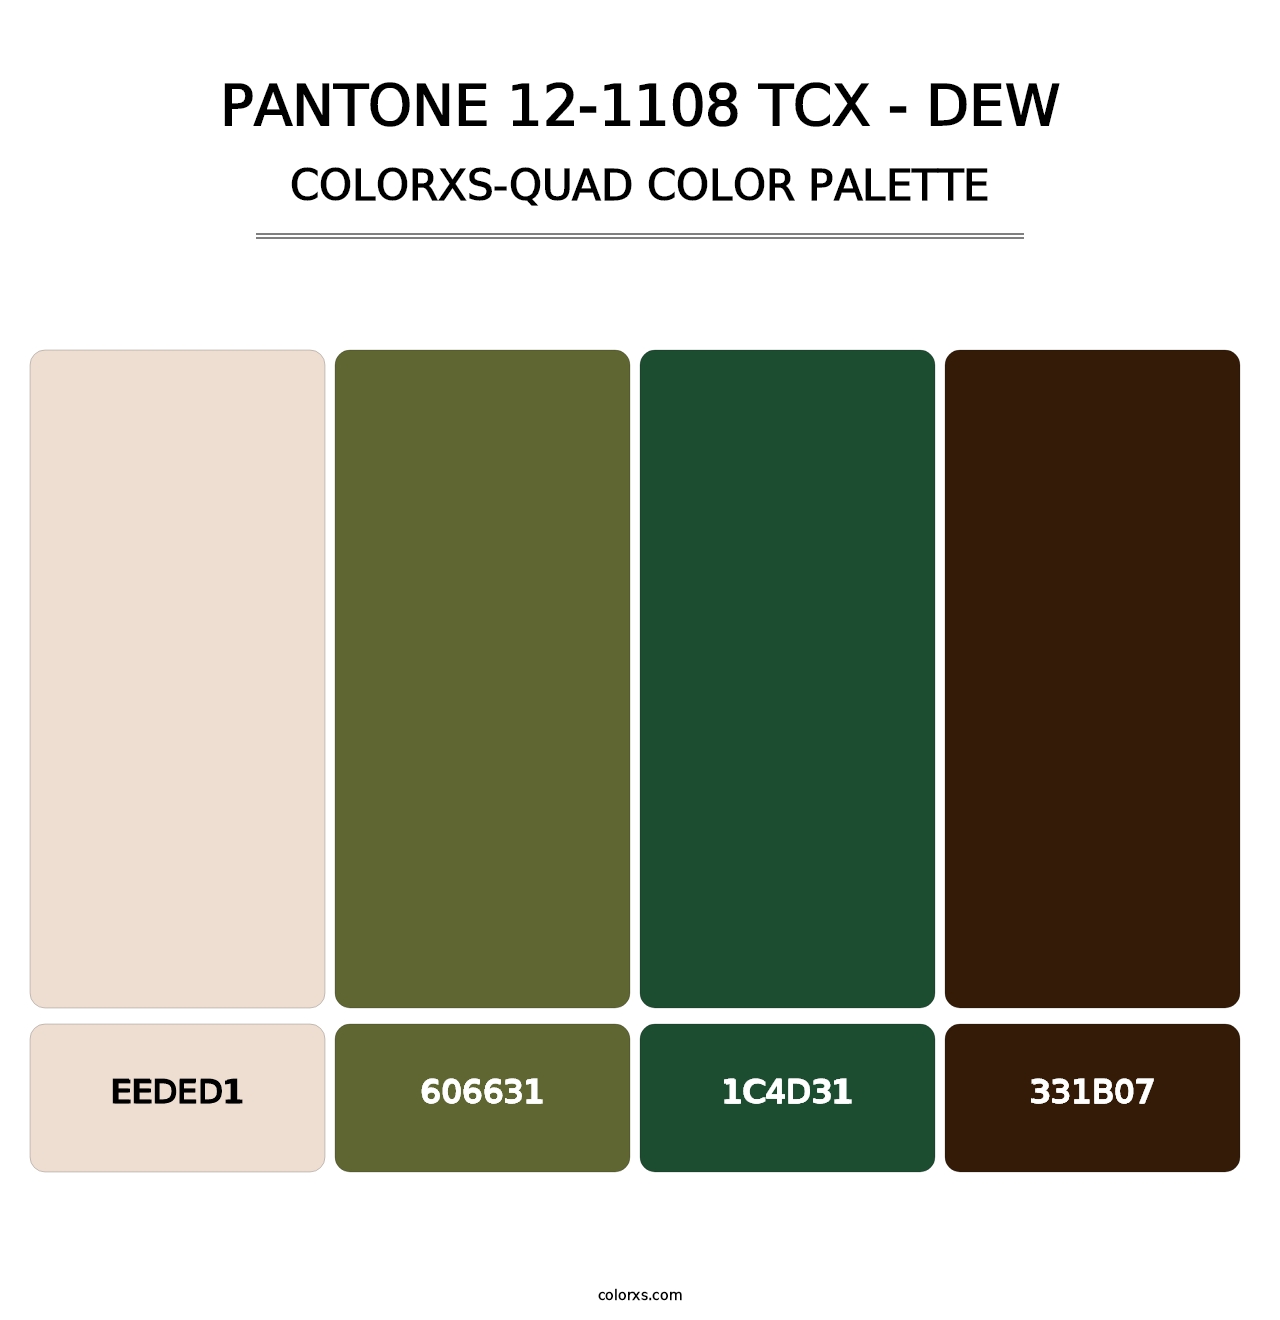 PANTONE 12-1108 TCX - Dew - Colorxs Quad Palette